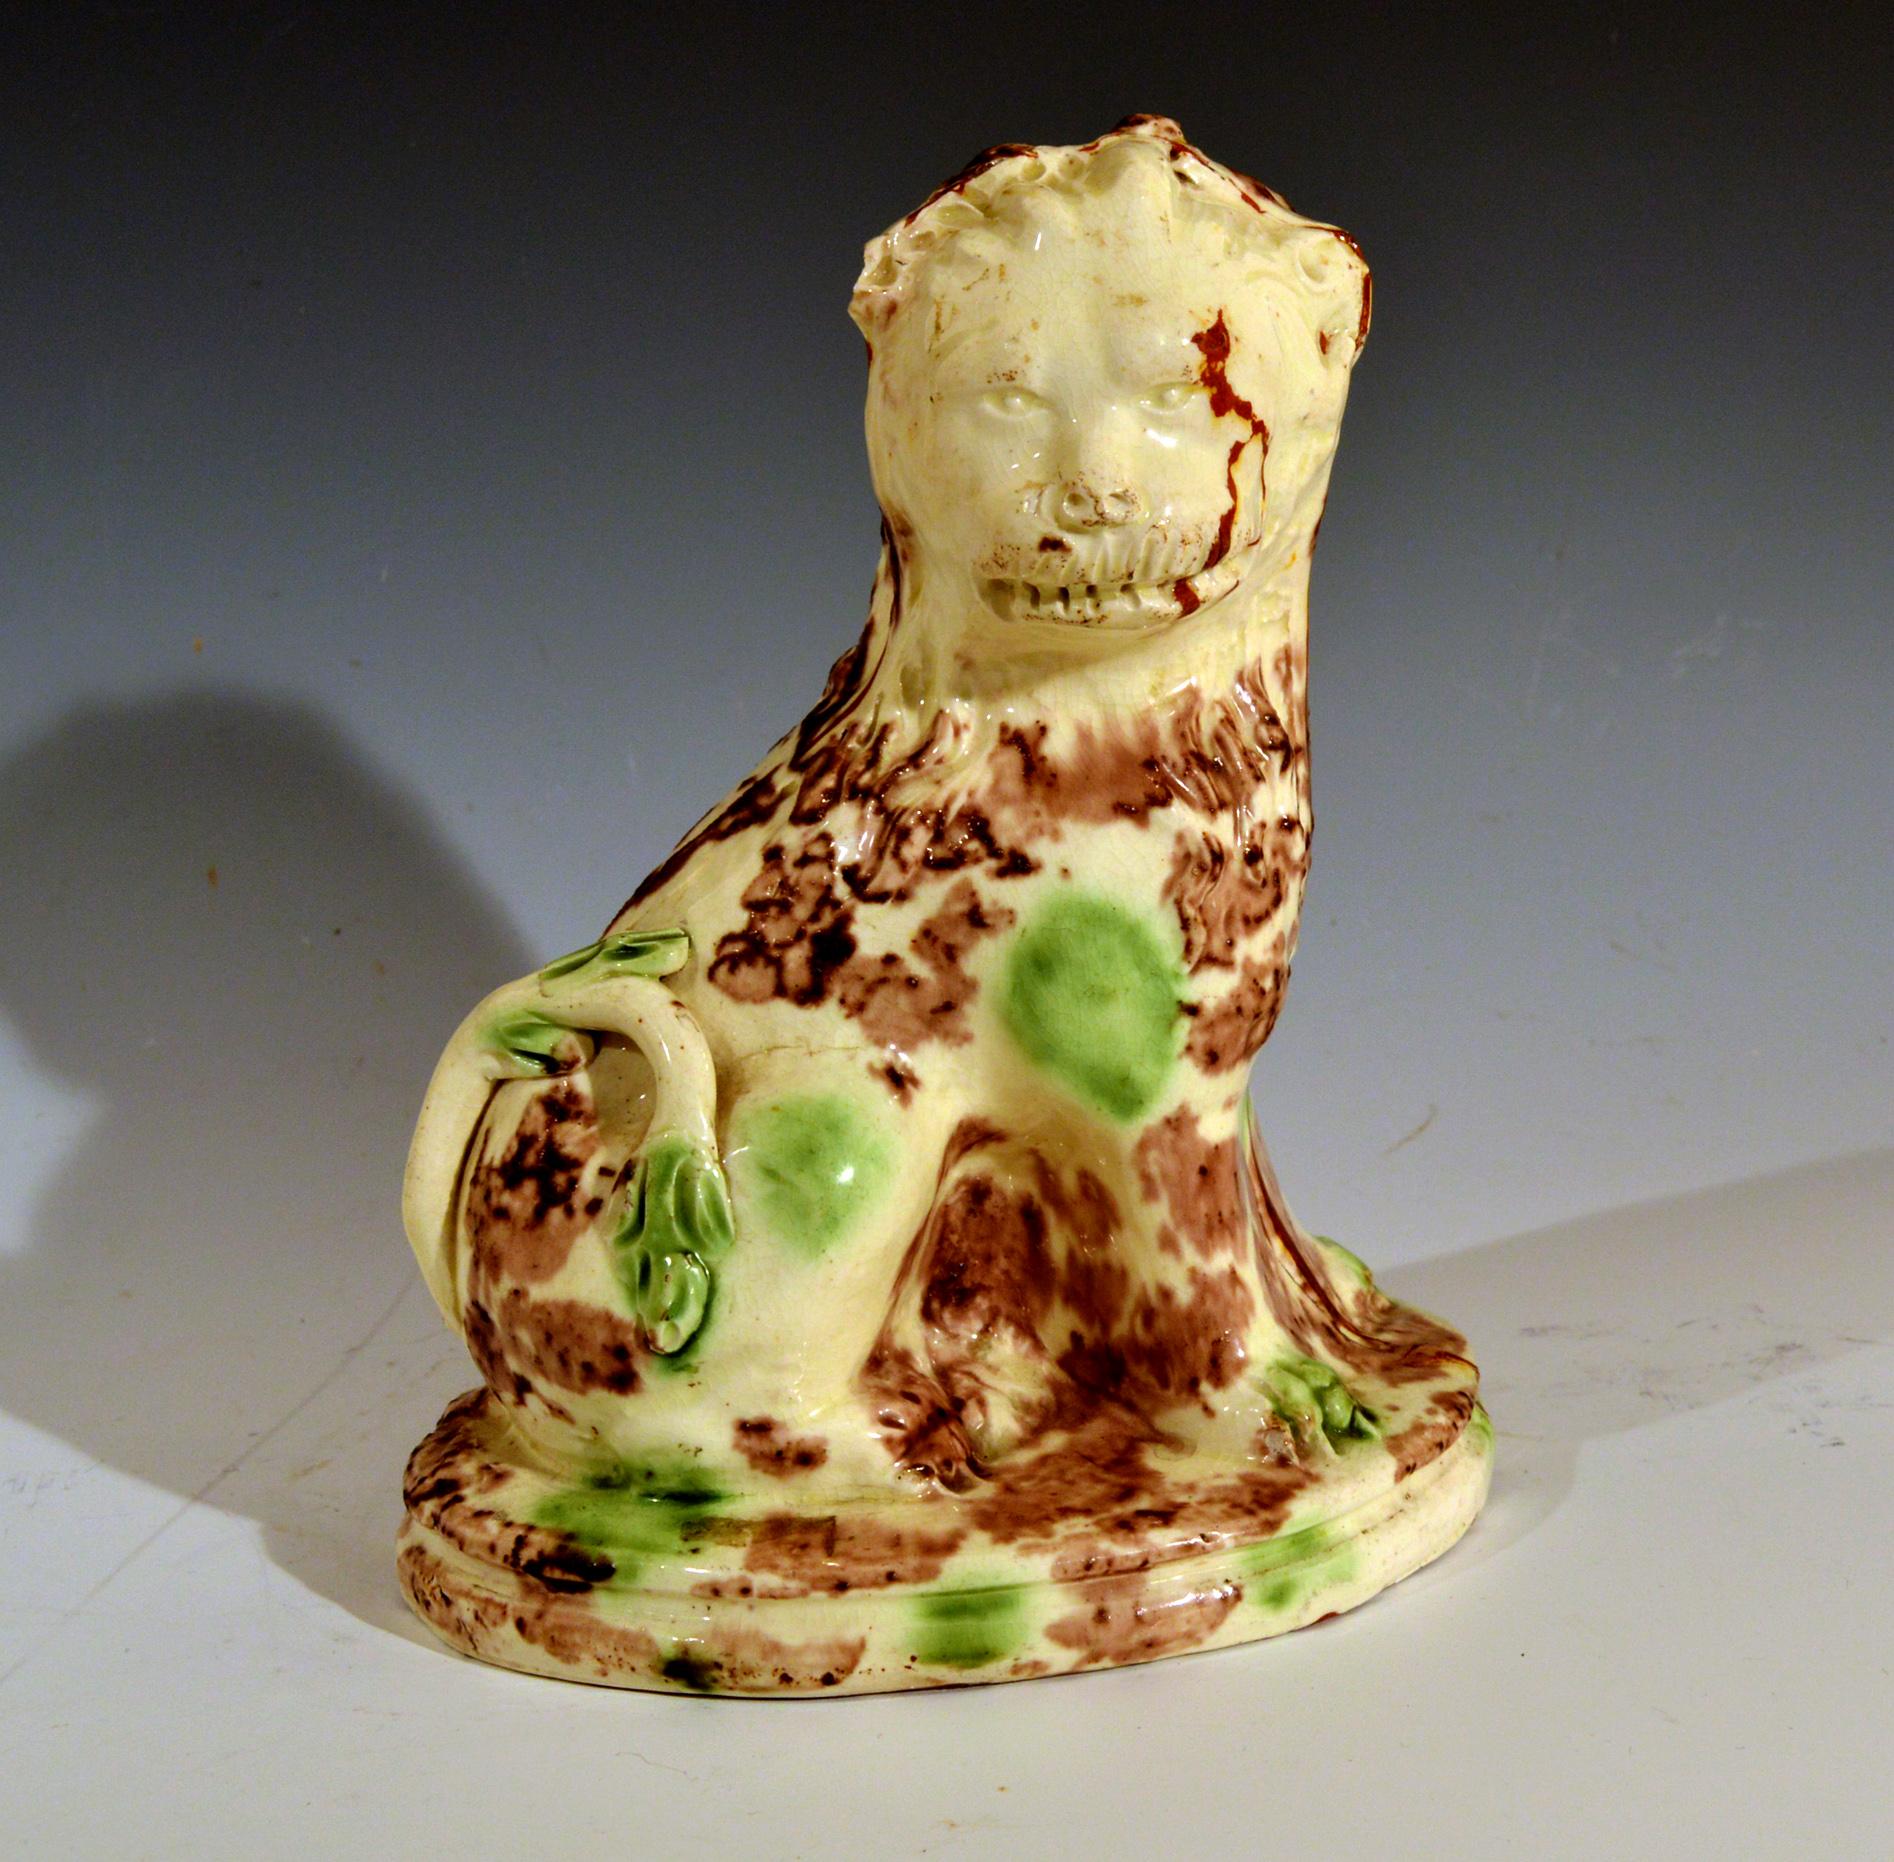 Modèle de lion en poterie anglaise,
Céramique de type Whieldon à glaçure en écaille de tortue,
vers 1765-1785

Le modèle de poterie anglaise d'un lion assis avec une glaçure en écaille de tortue de type Whieldon sur un corps en agate et redware a un